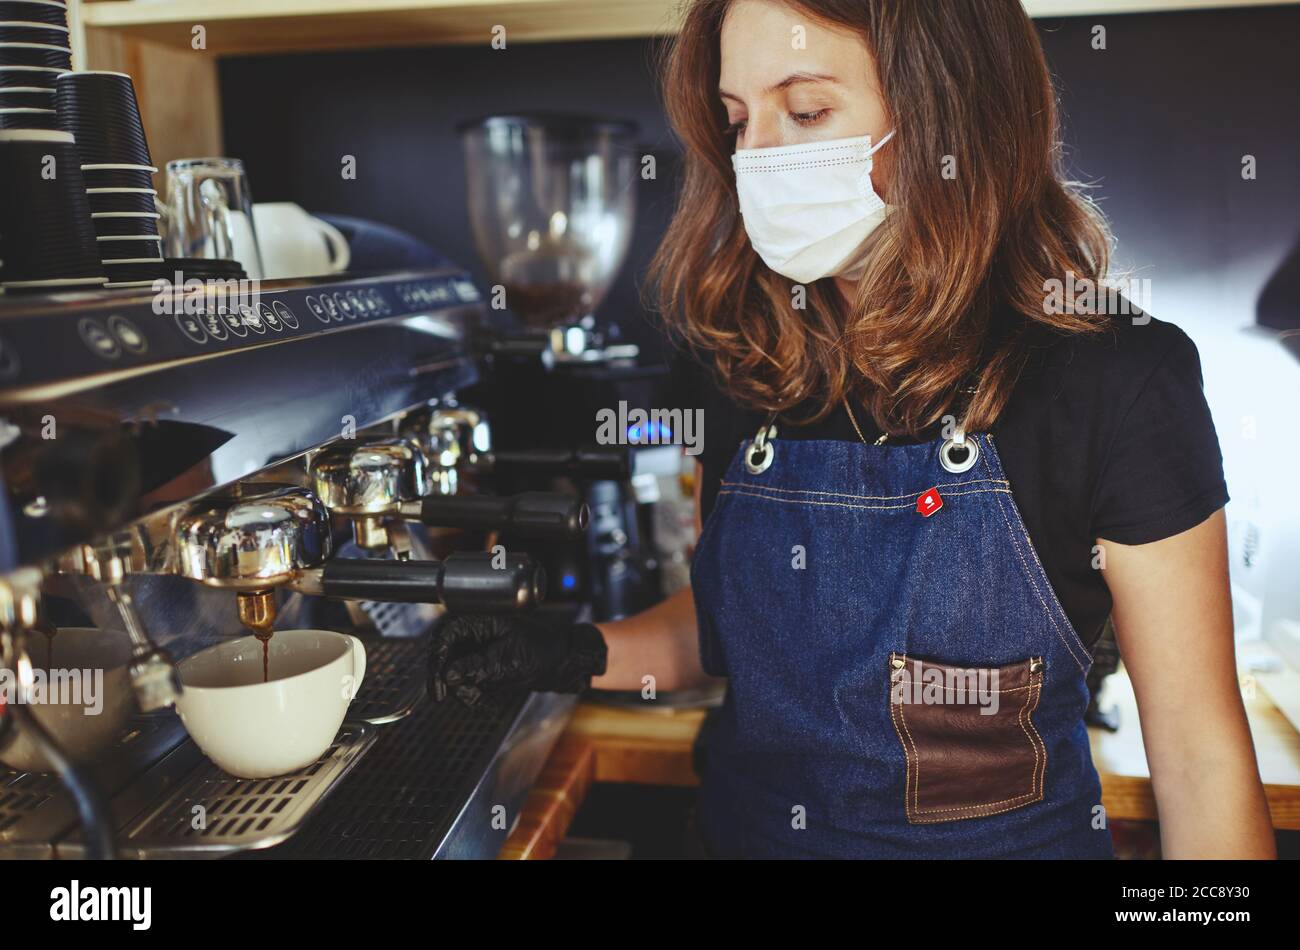 Barista portant un masque de protection du visage et des gants médicaux en latex noirs, préparant une boisson à base de café à l'aide d'une machine à espresso dans un café. Banque D'Images